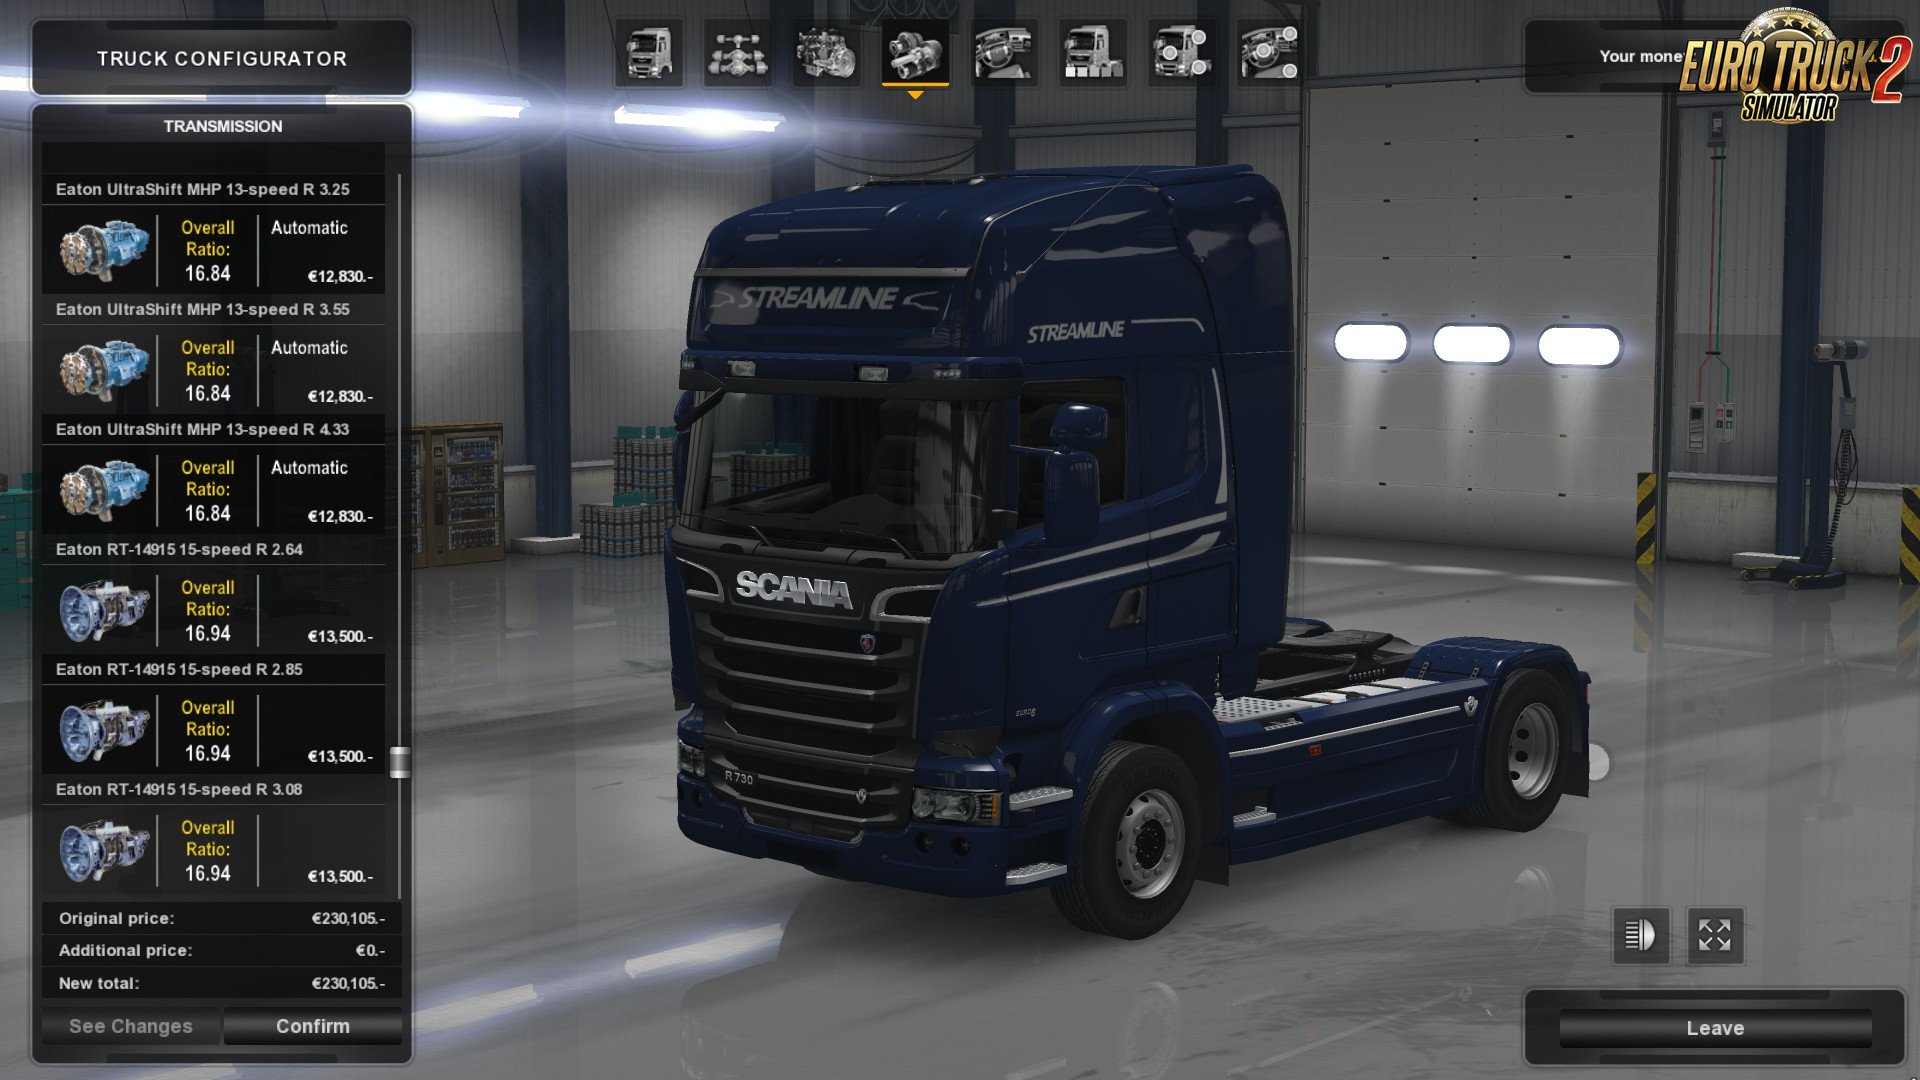 euro truck simulator download free full version 2010